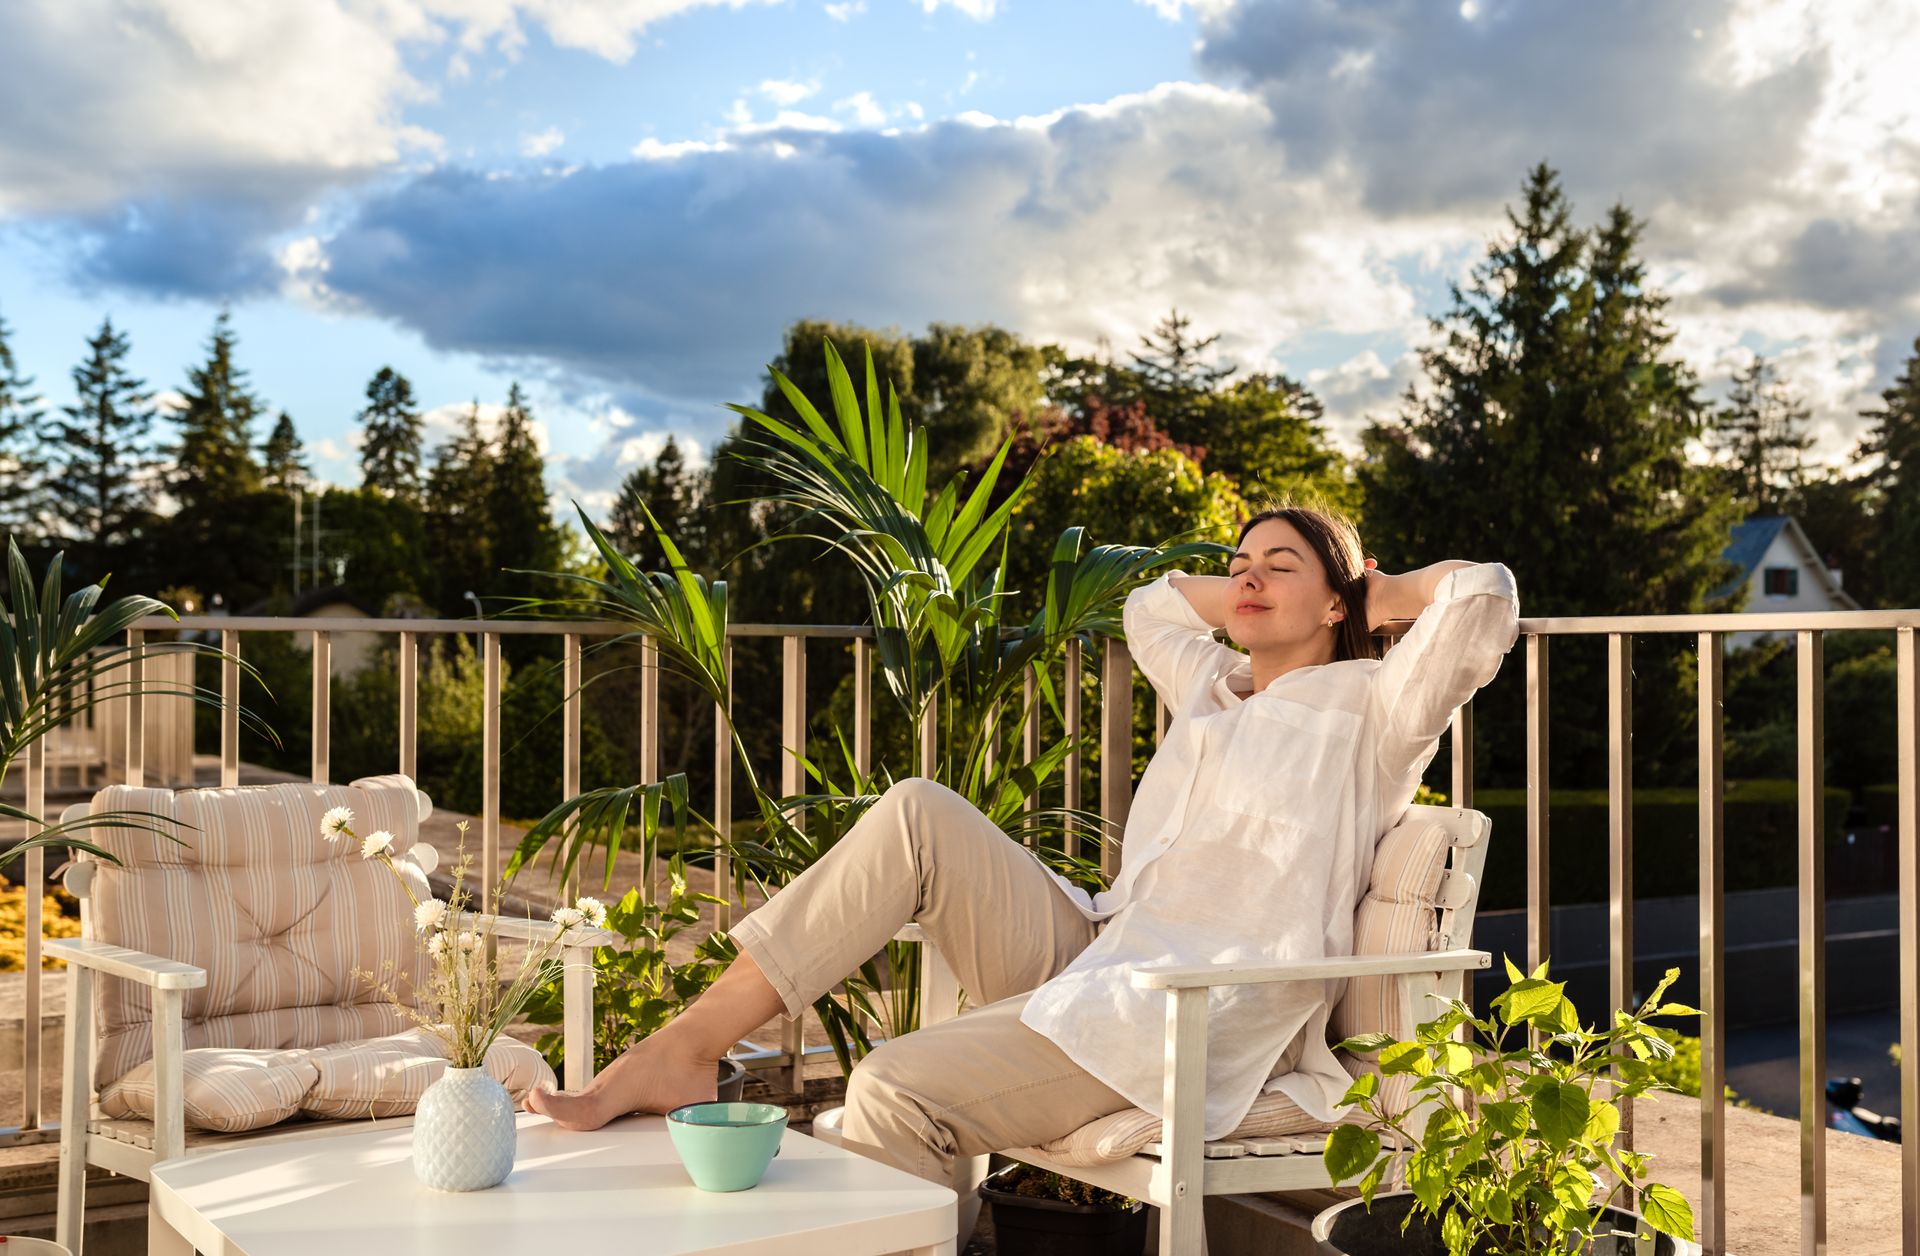 žena odpočívá na svém krásném balkonu s umělou trávou